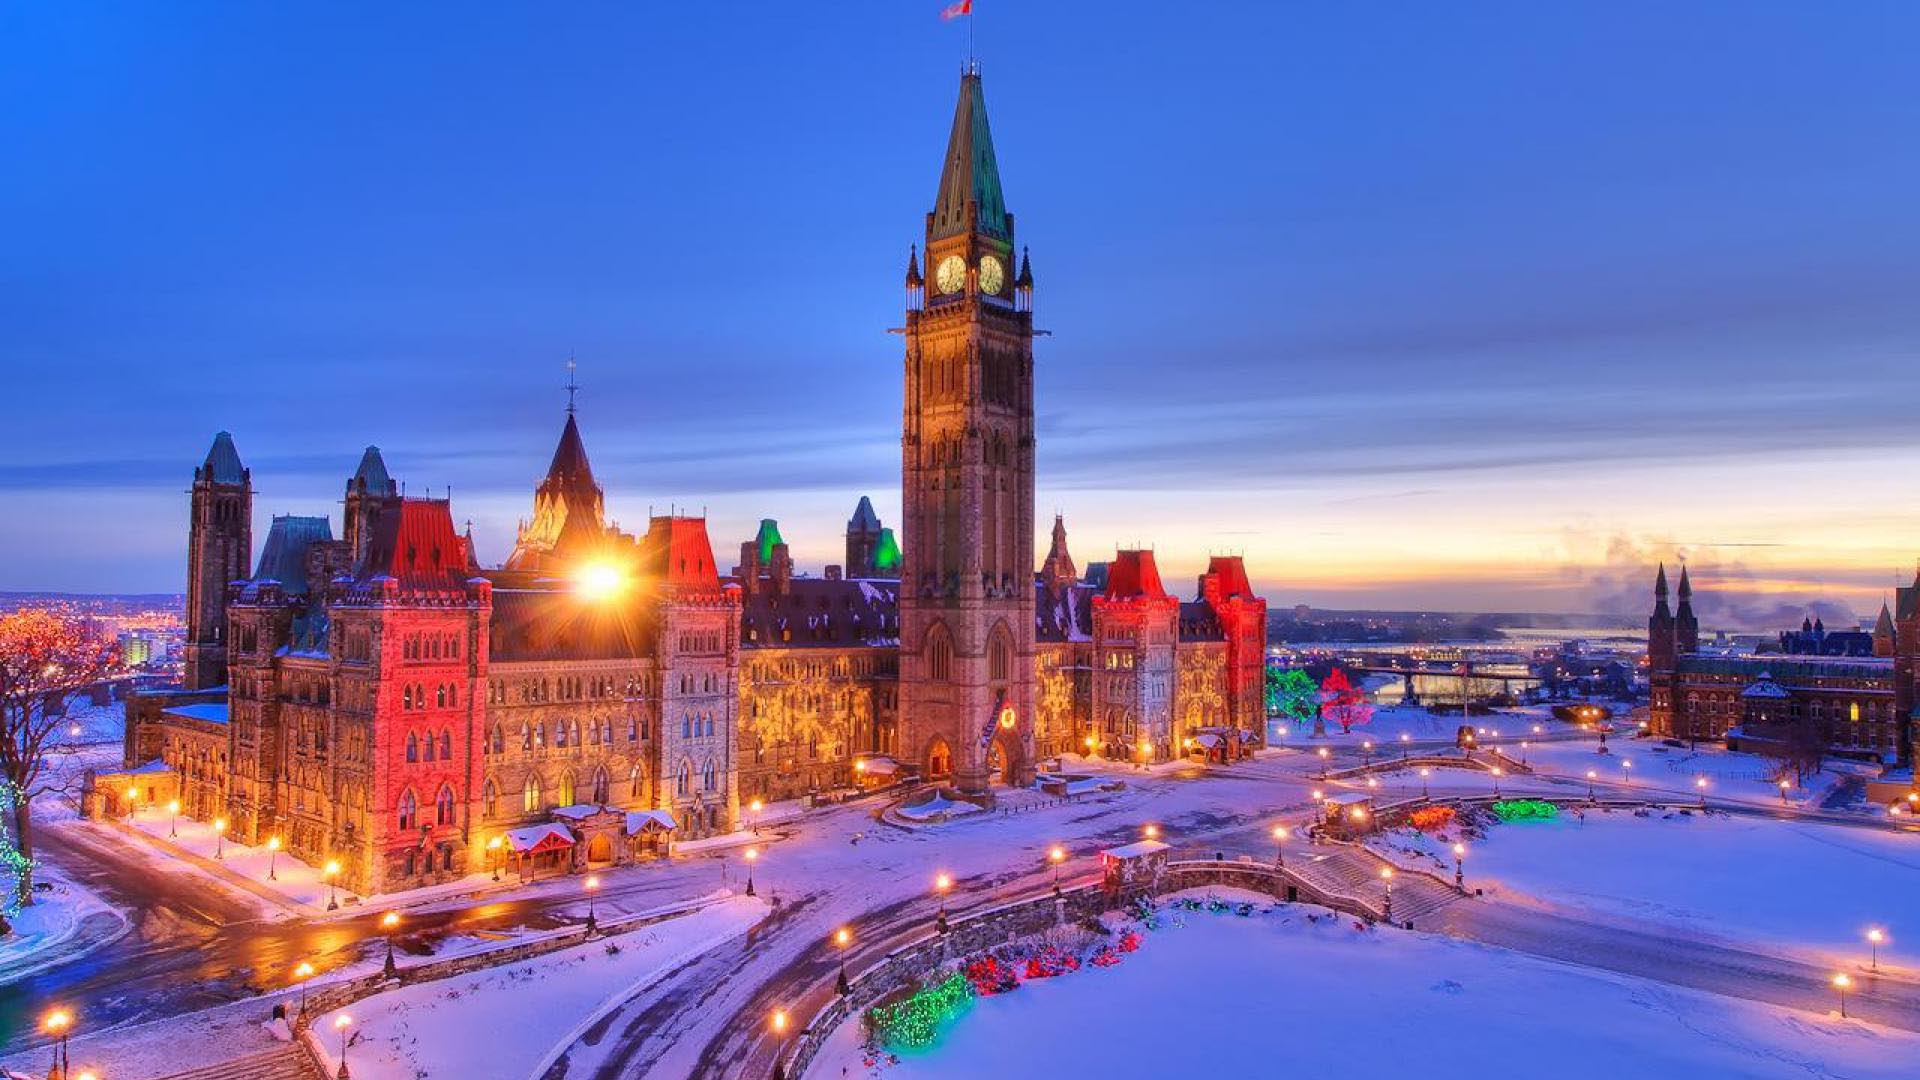 تور کانادا با پرواز مستقیم و اقامت 12 روزه در بهترین هتل های کشور کانادا